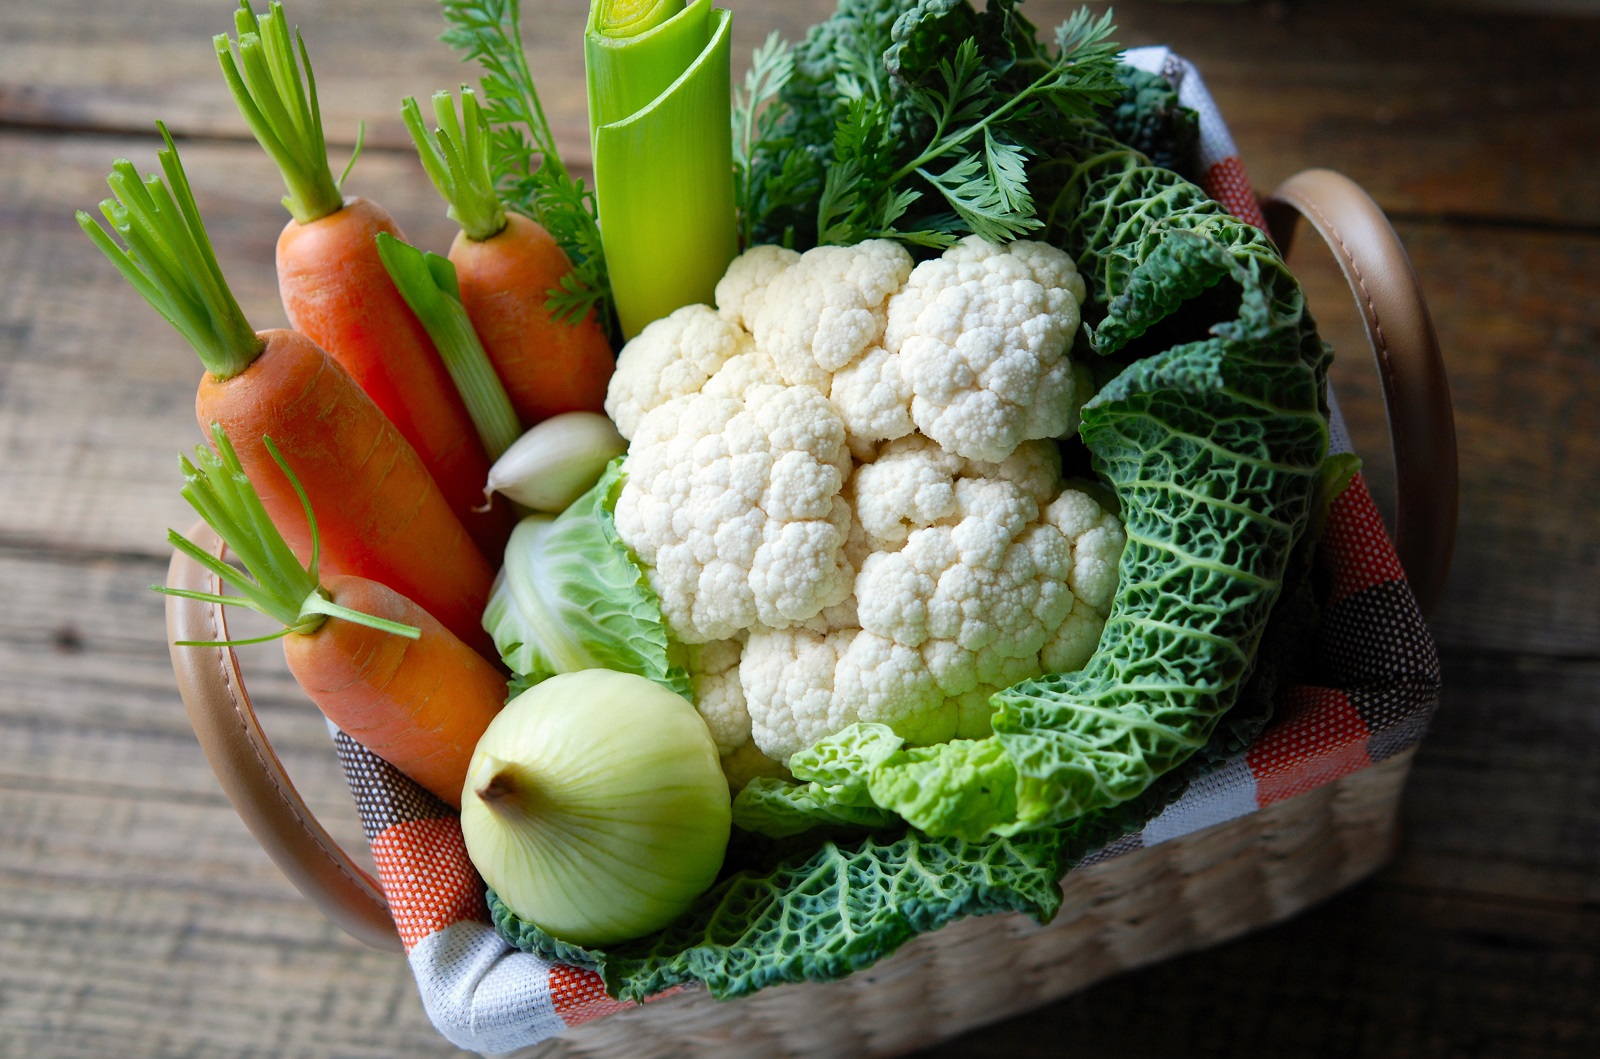 En hiver, faire le plein de légumes de saison. © alex, Adobe Stock